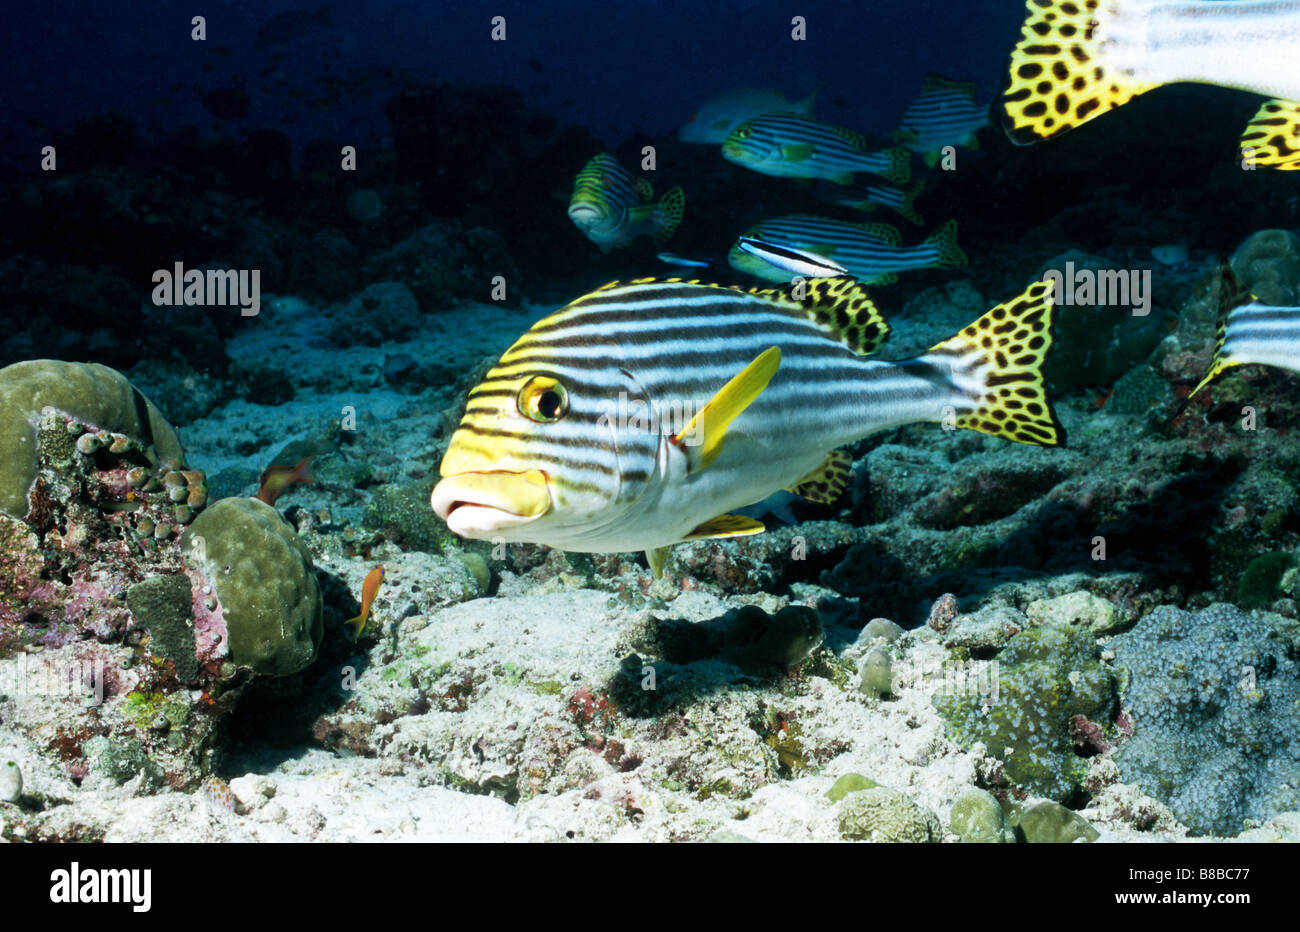 Sweetlips in corrispondenza di una stazione di pulizia. Perciformes. Plectorhinchus Vittatus. Vita sottomarina delle Maldive. Pesci marini. Foto Stock